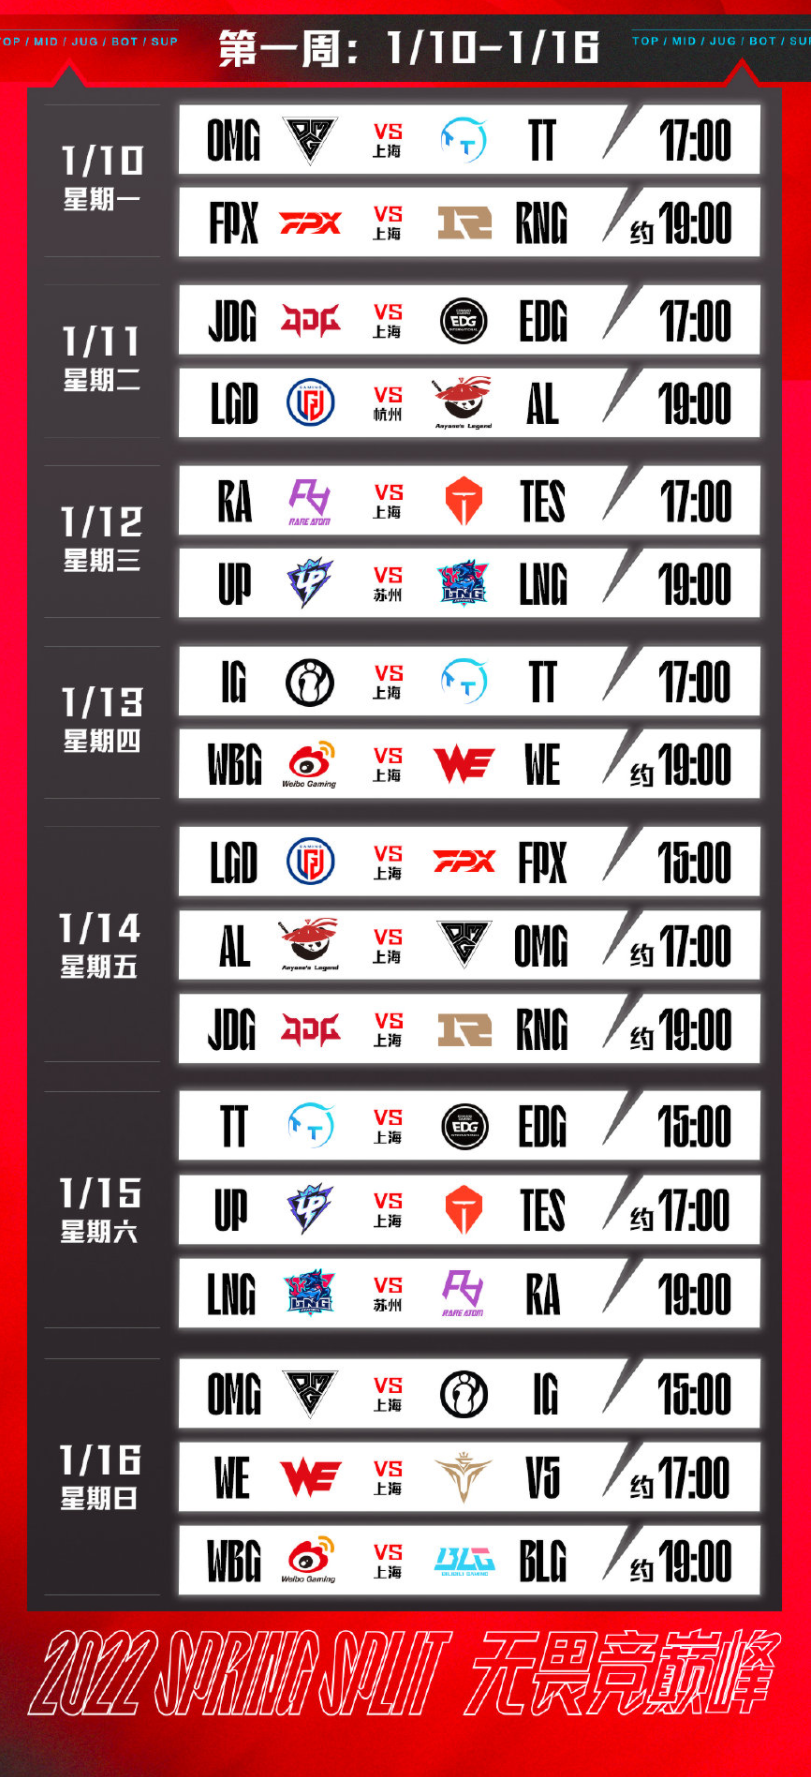 2022 LPL 春季赛到来，上海主场首场比赛 1 月 4 日 14:00 开票